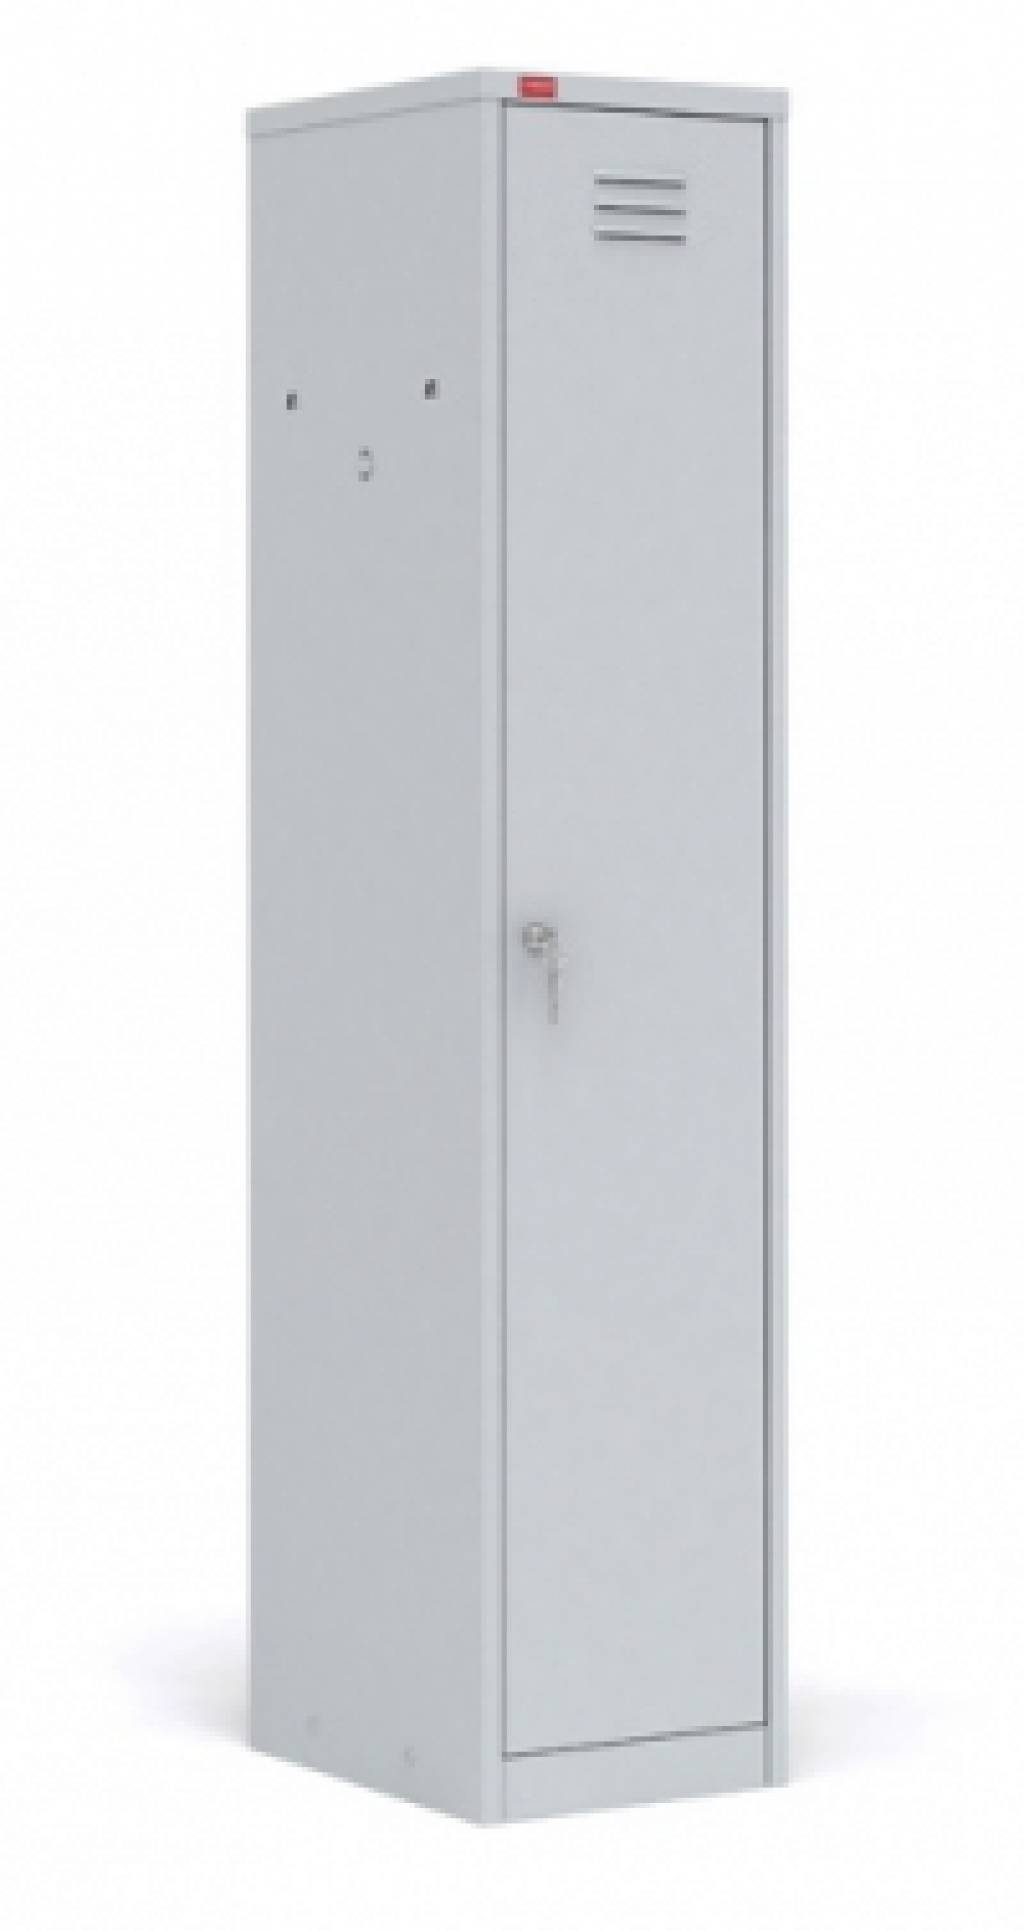 Фото - шкаф шрм 11-400 (1860/400/500 мм) одежный разборный одностворчатый из металла для спецодежды